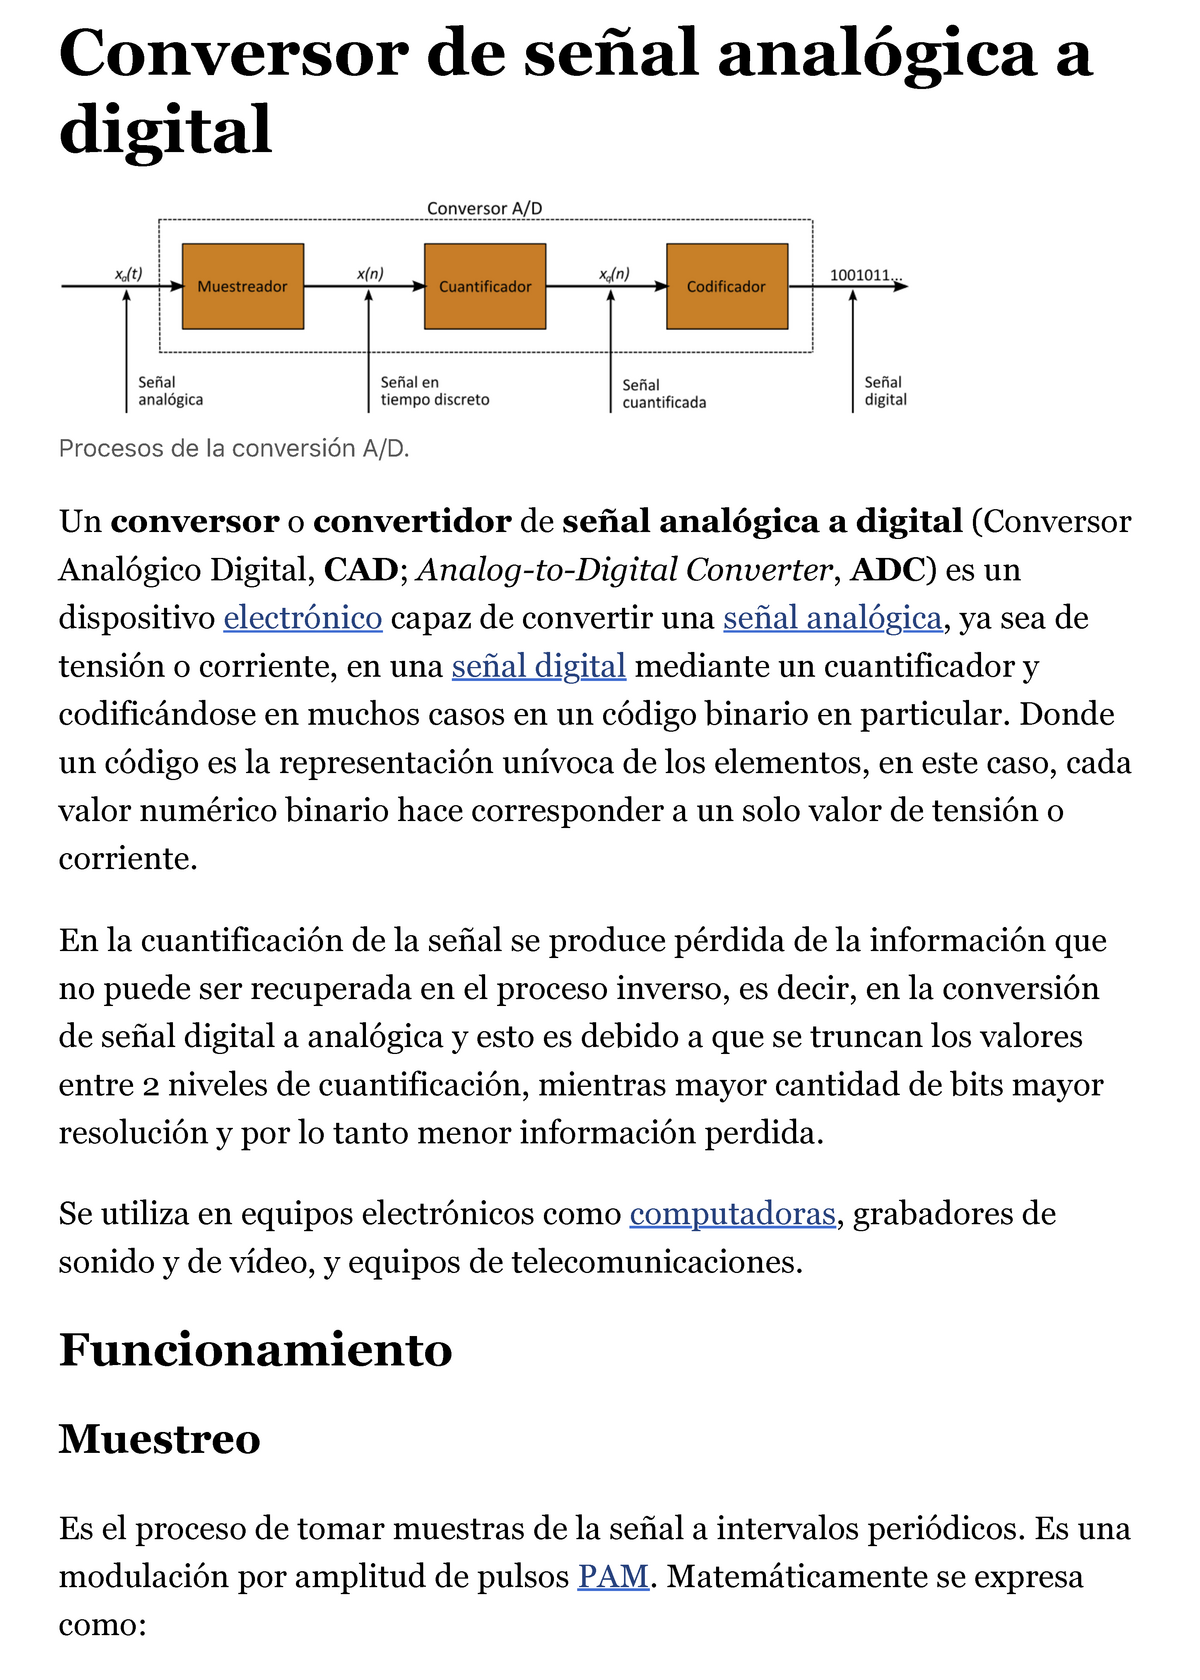 Conversión digital-analógica - Wikipedia, la enciclopedia libre